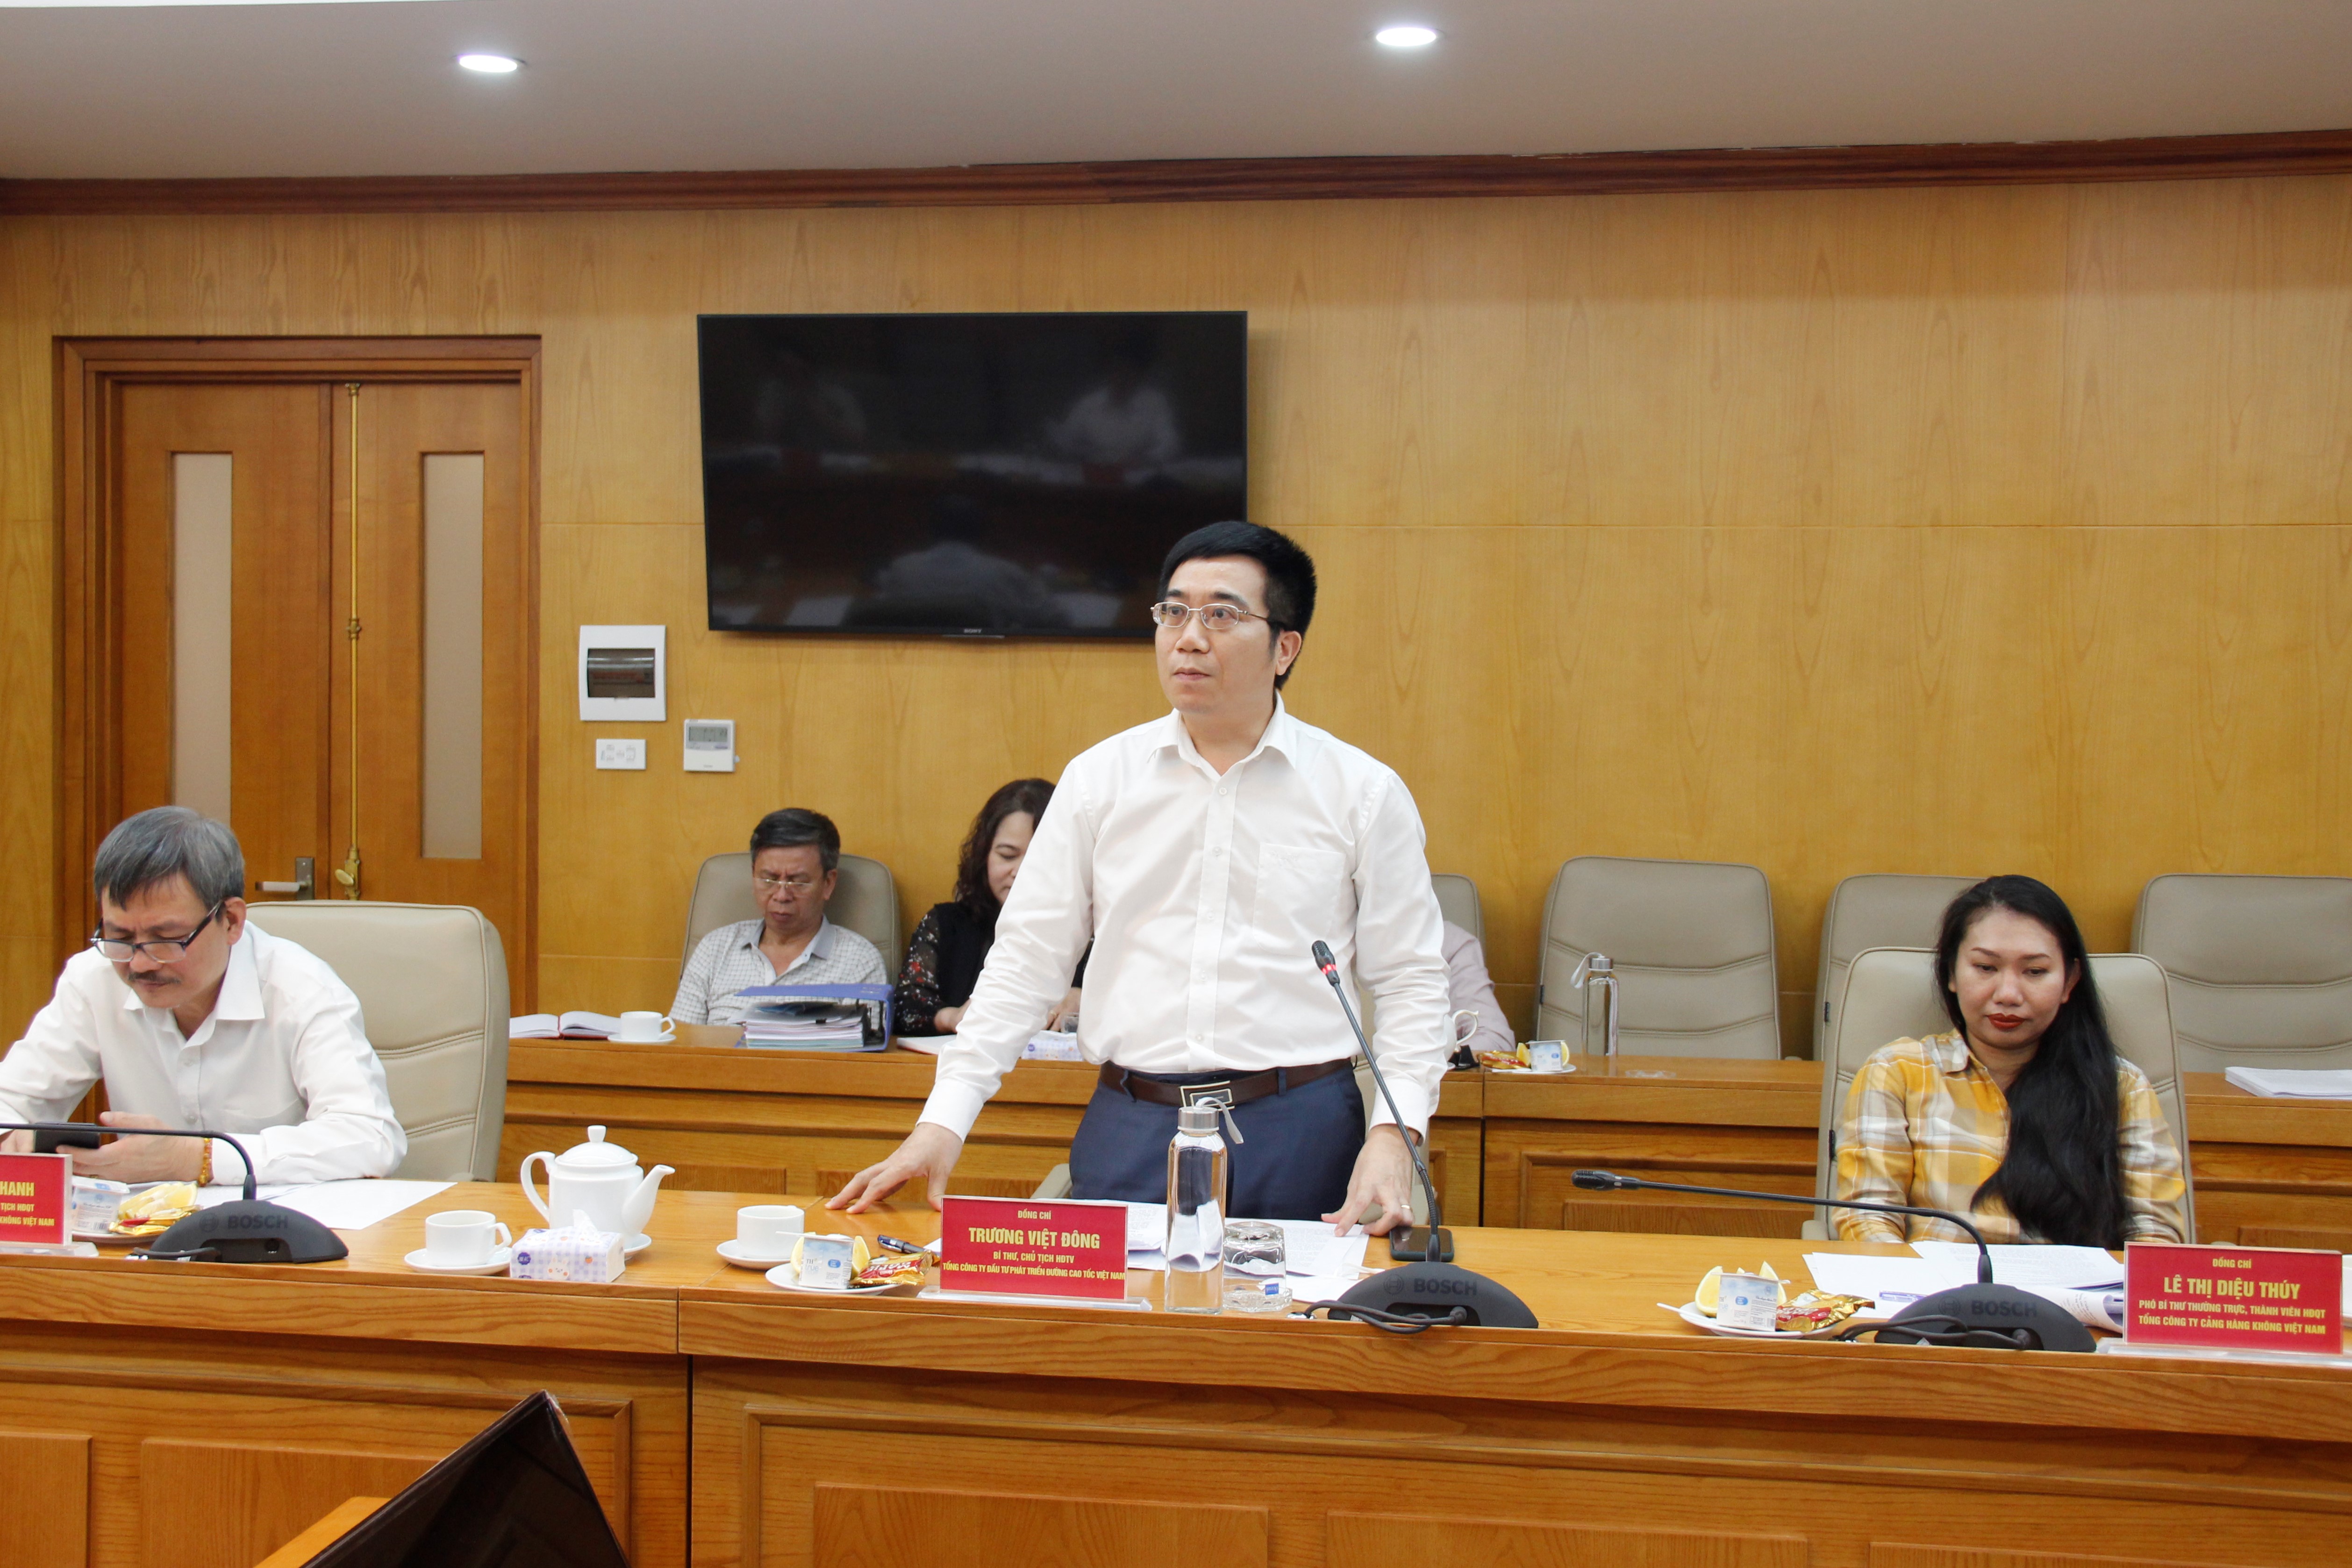 Đồng chí Trương Việt Đông, Bí thư Đảng ủy, Chủ tịch HĐTV, Tổng công ty Đầu tư phát triển đường cao tốc Việt Nam báo cáo tại buổi làm việc.